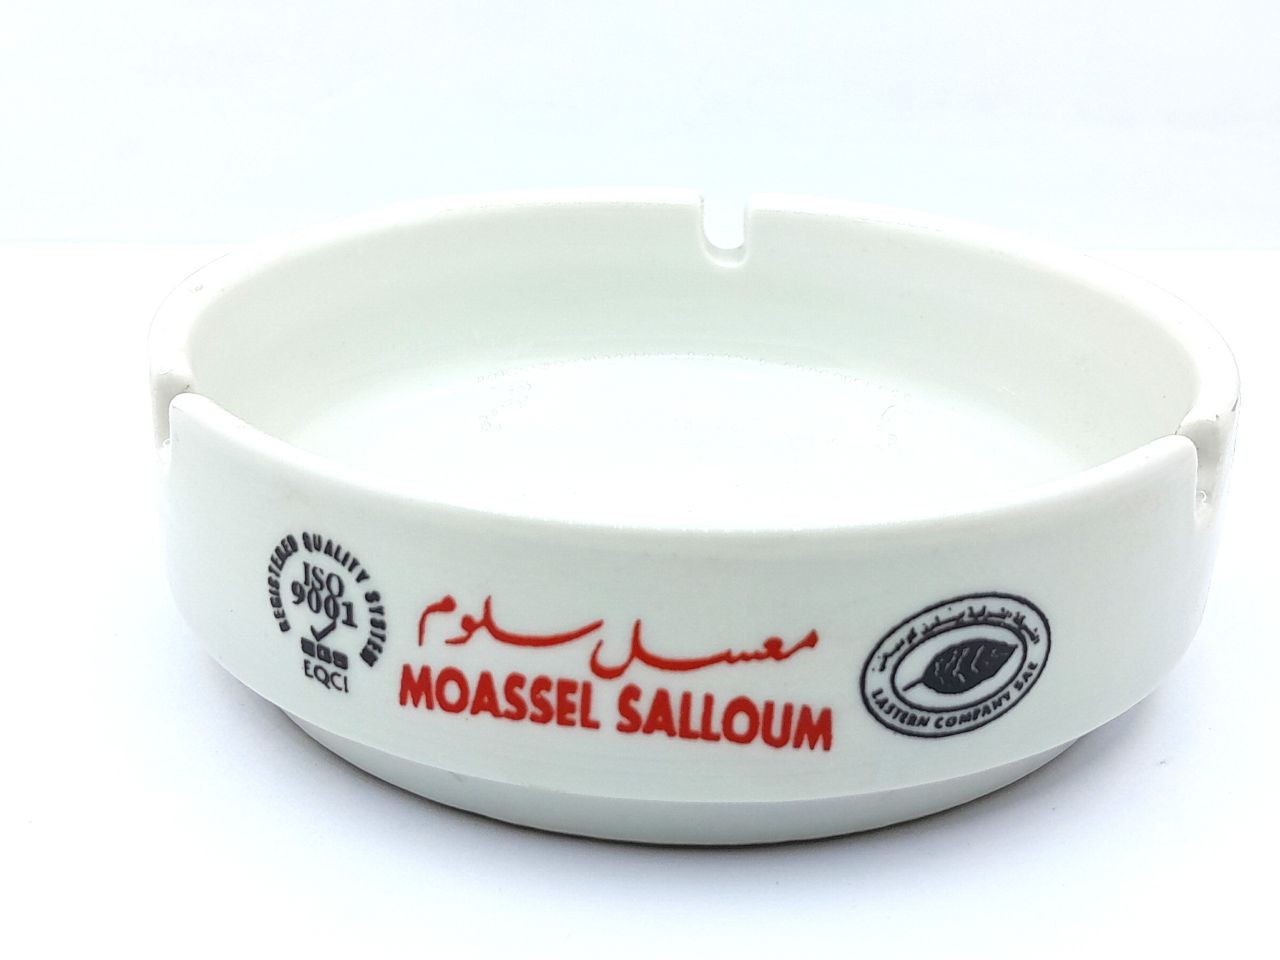 Salloum molasses extinguisher